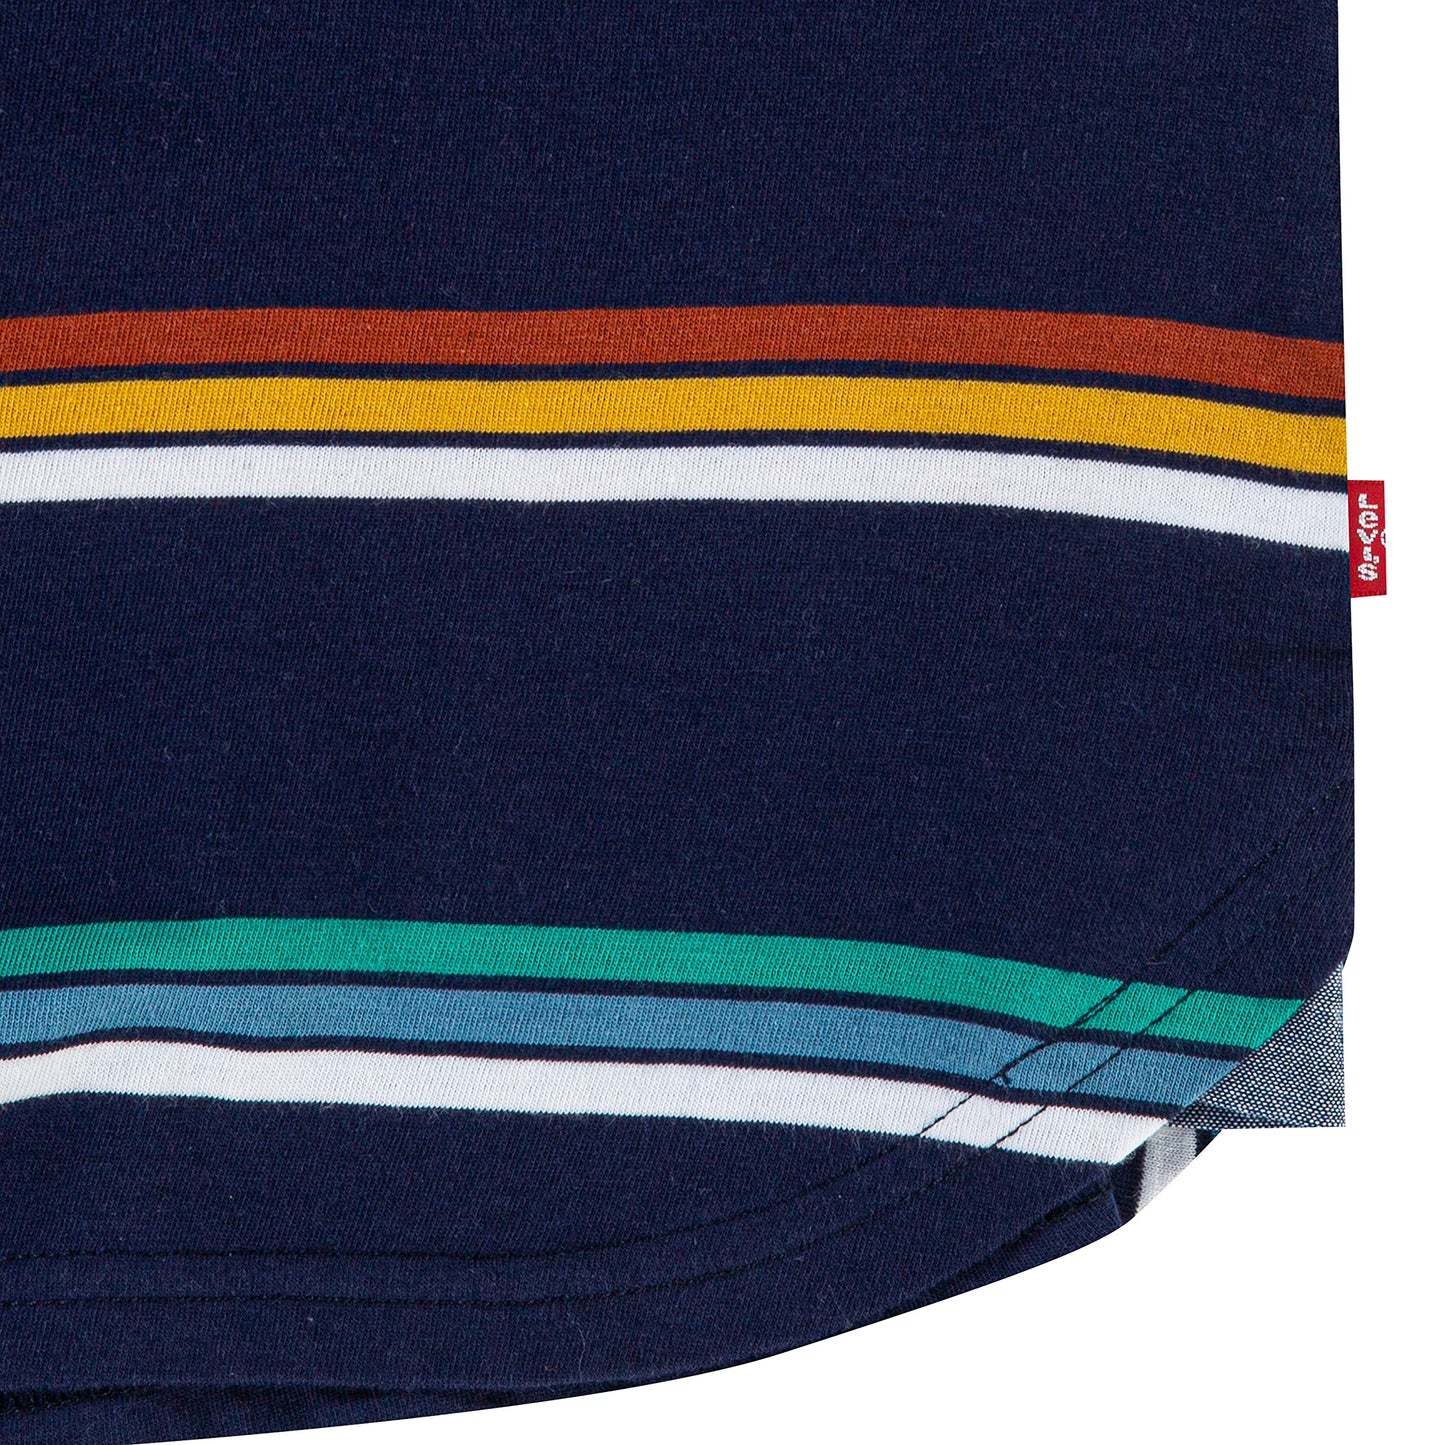 Image 4 of Striped Ringer Tee Shirt (Big Kids)